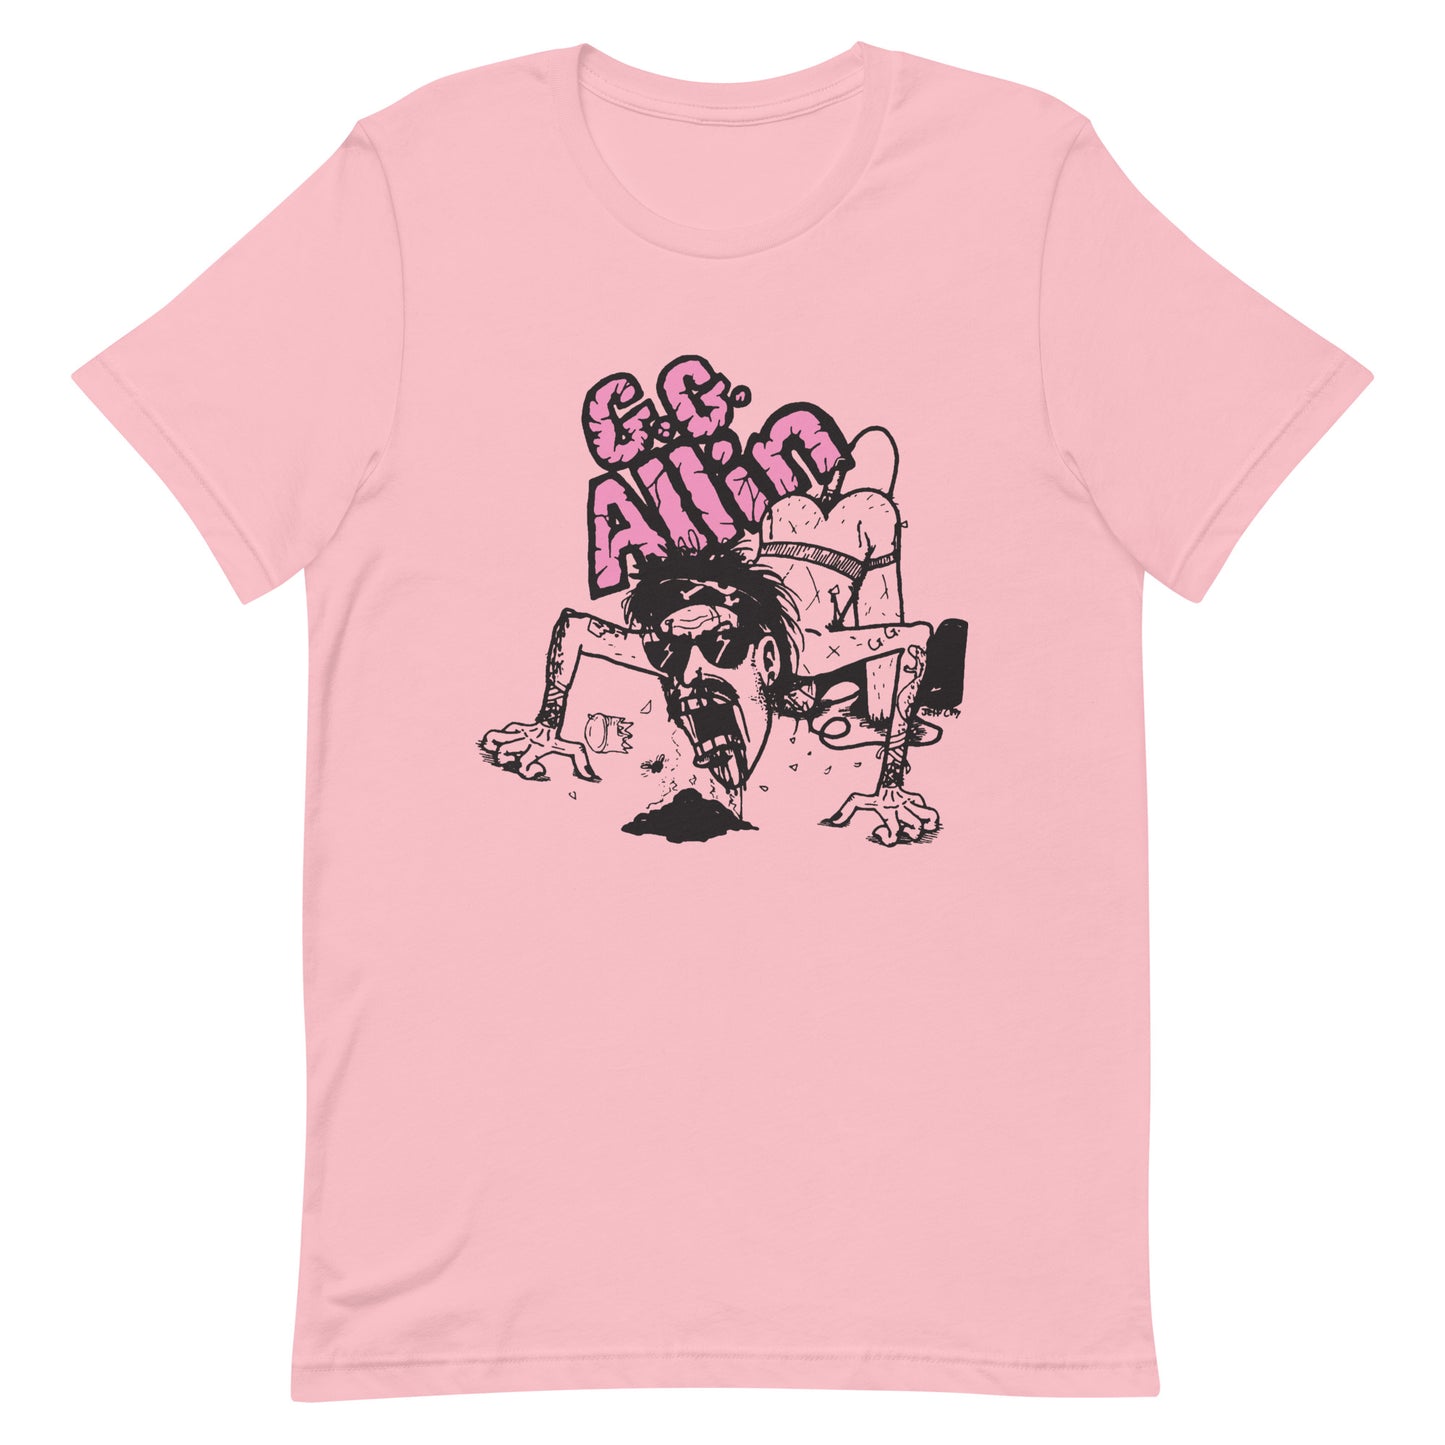 GG Allin - Cartoon T-Shirt